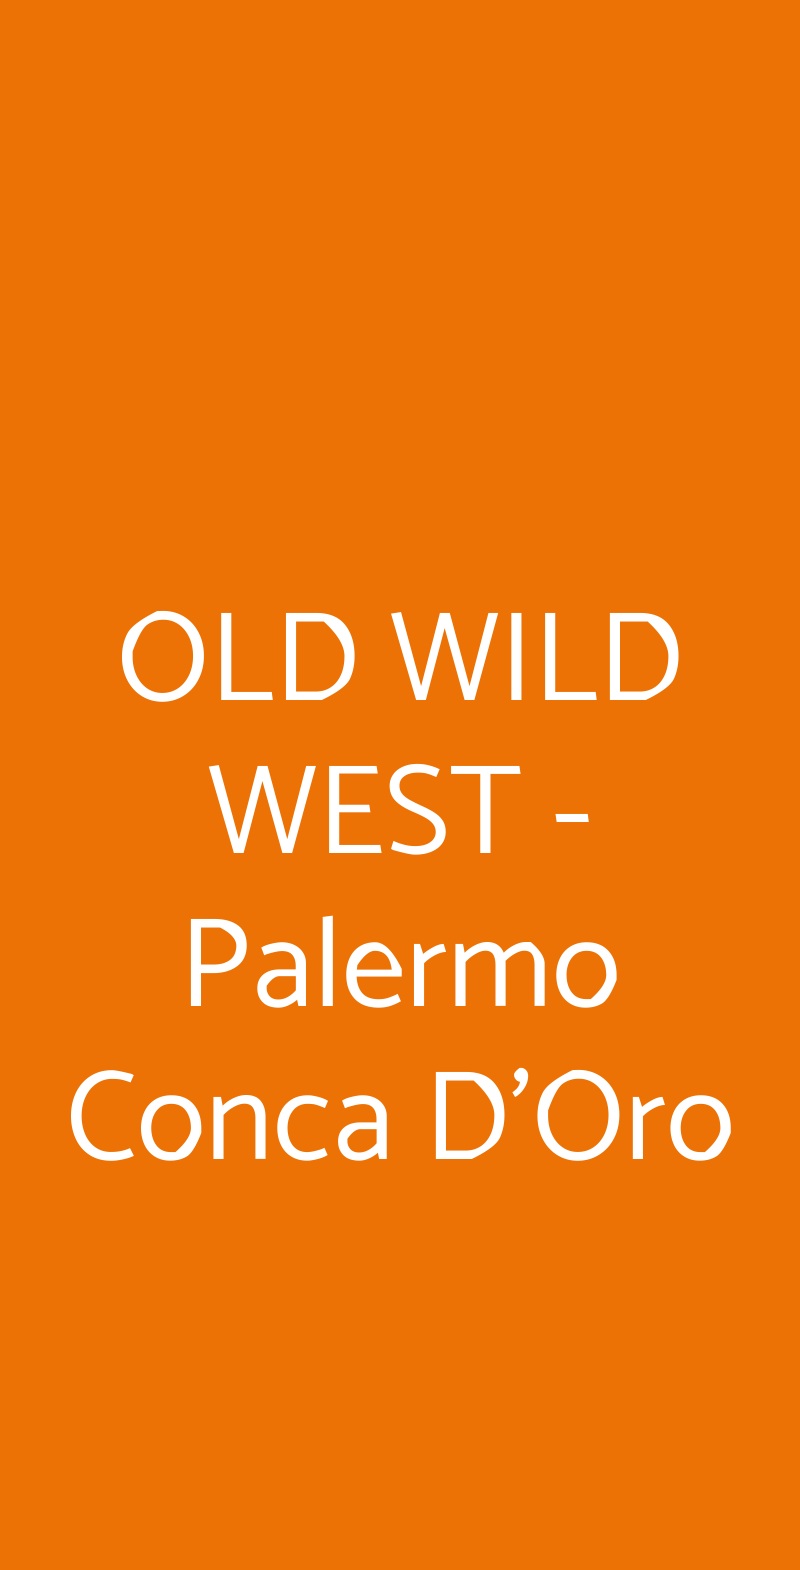 OLD WILD WEST - Palermo Conca D'Oro Palermo menù 1 pagina